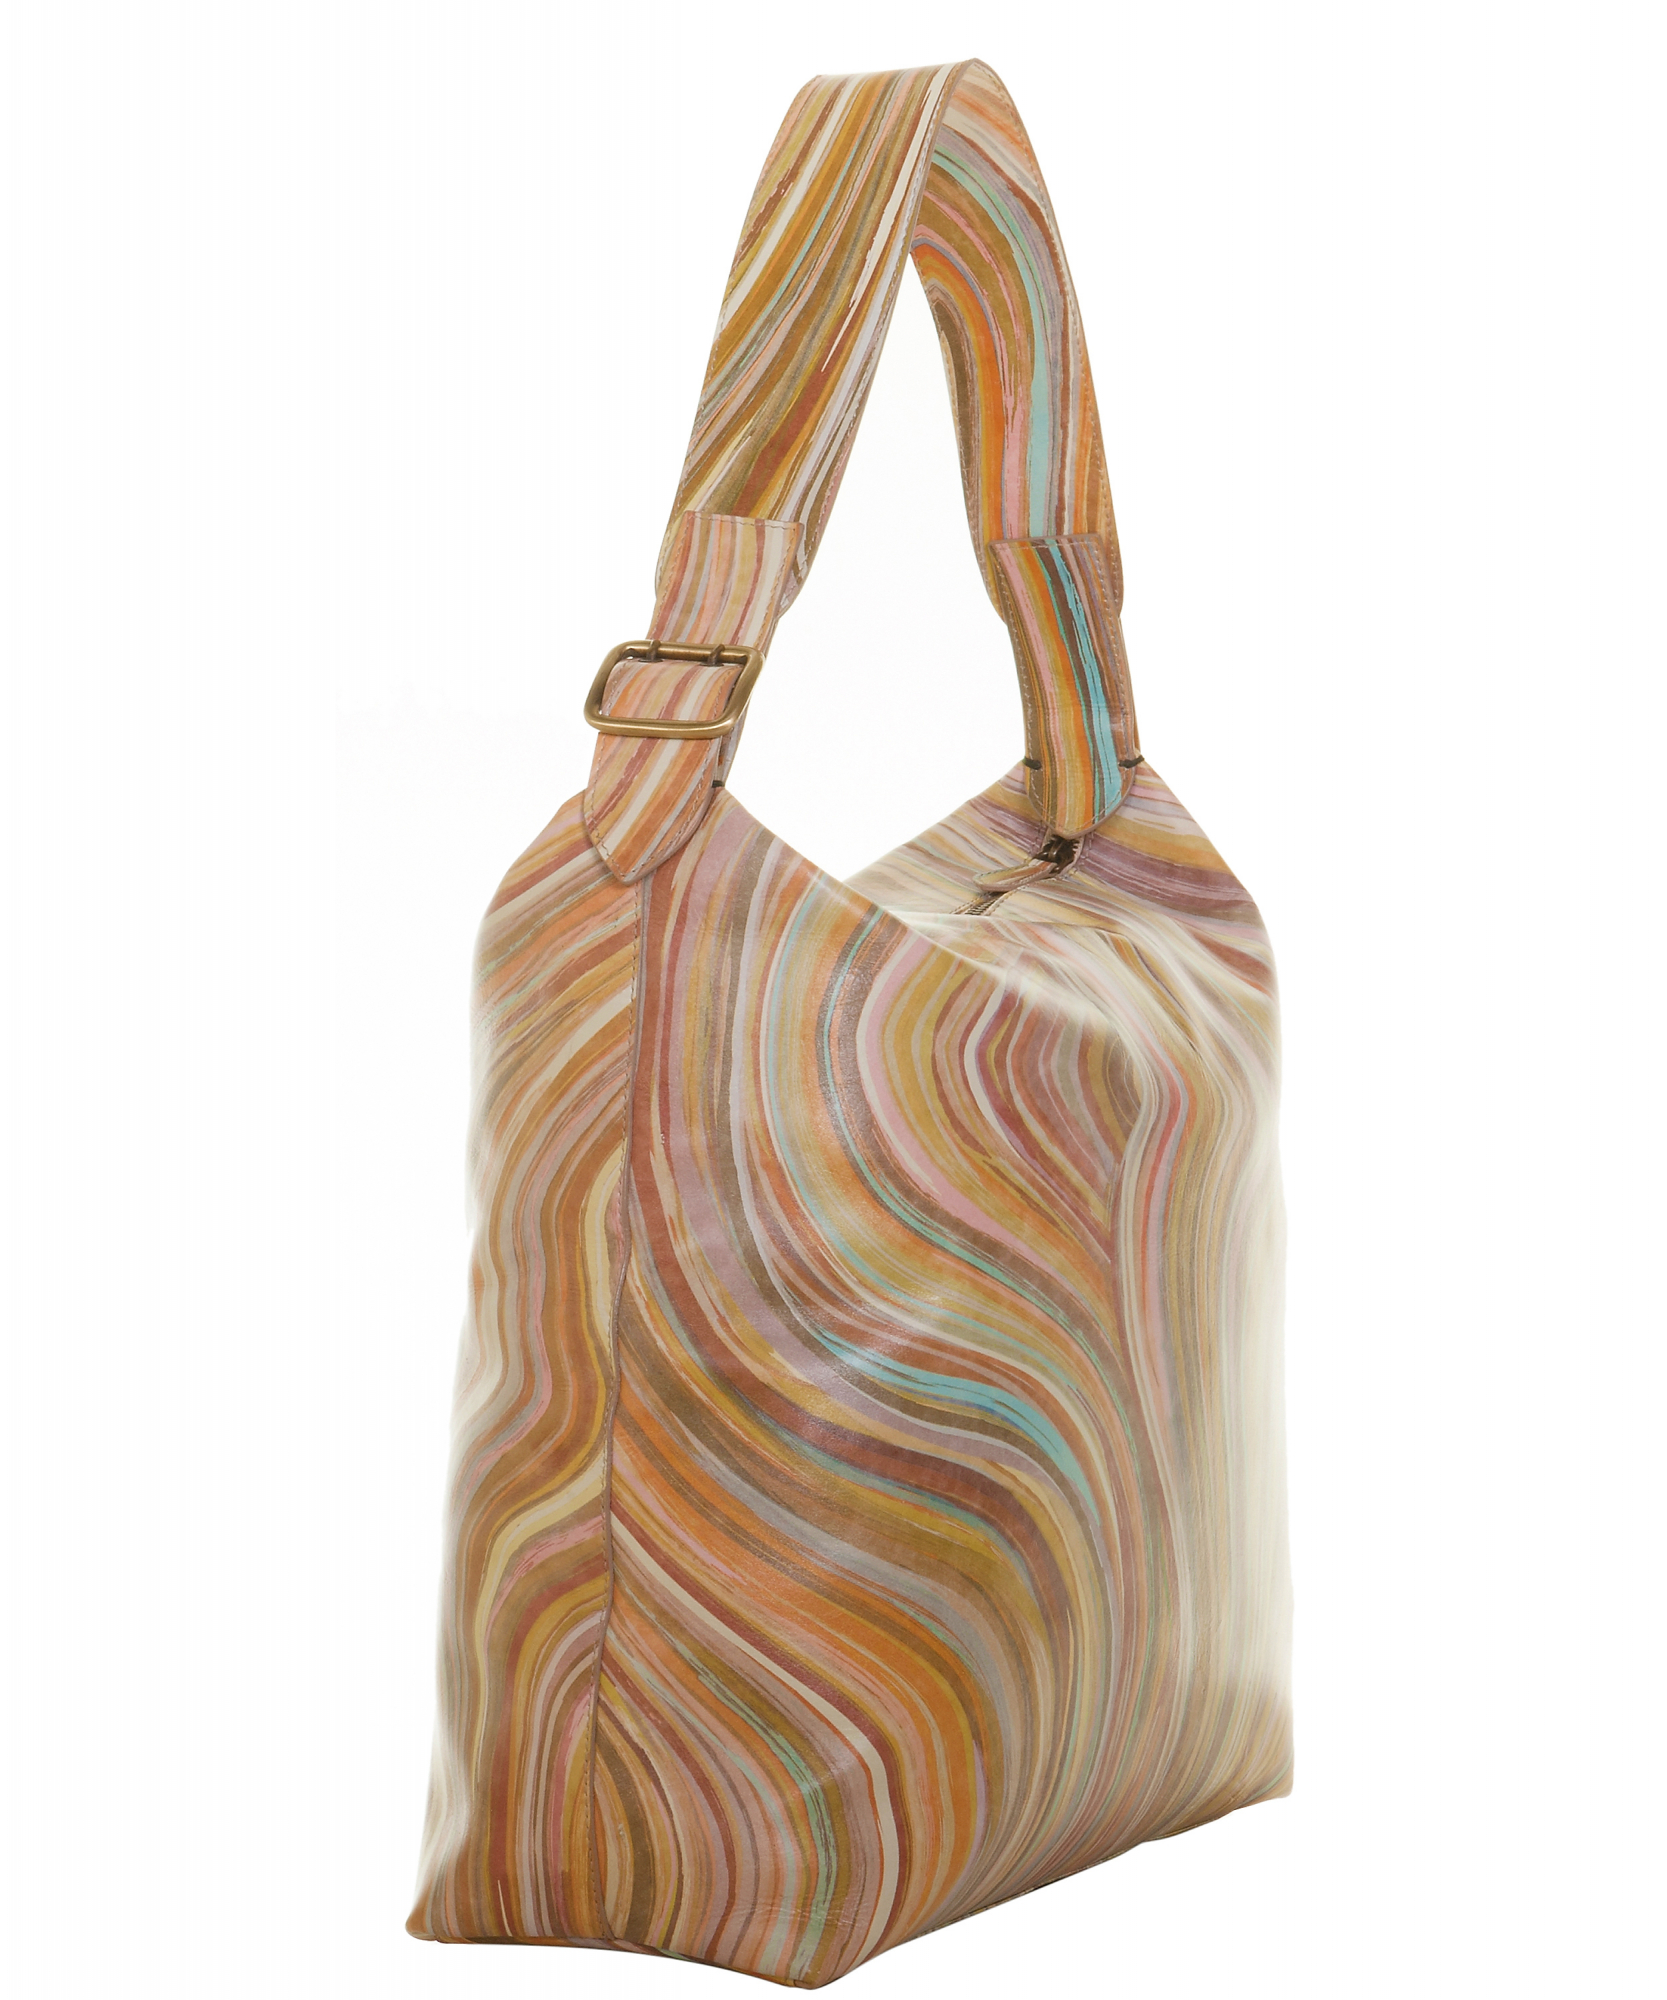 Swirl' Hobo Bag